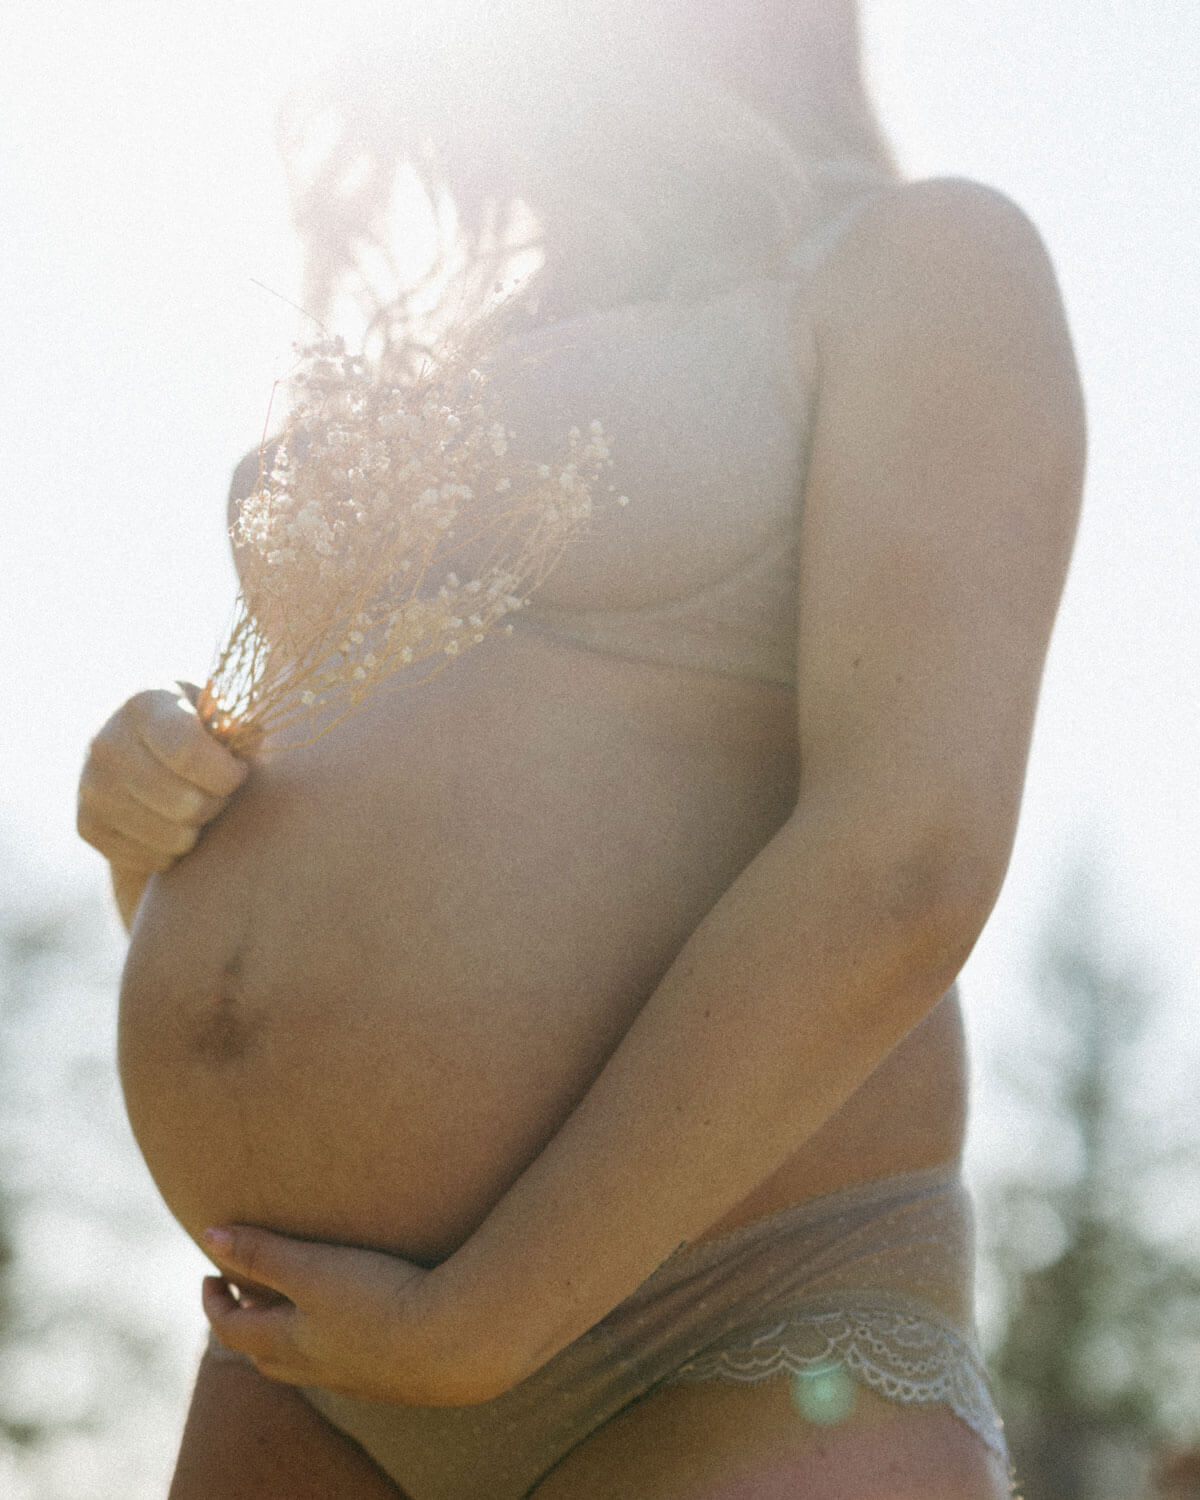 Best Maternity & Nursing Bras for Pregnancy